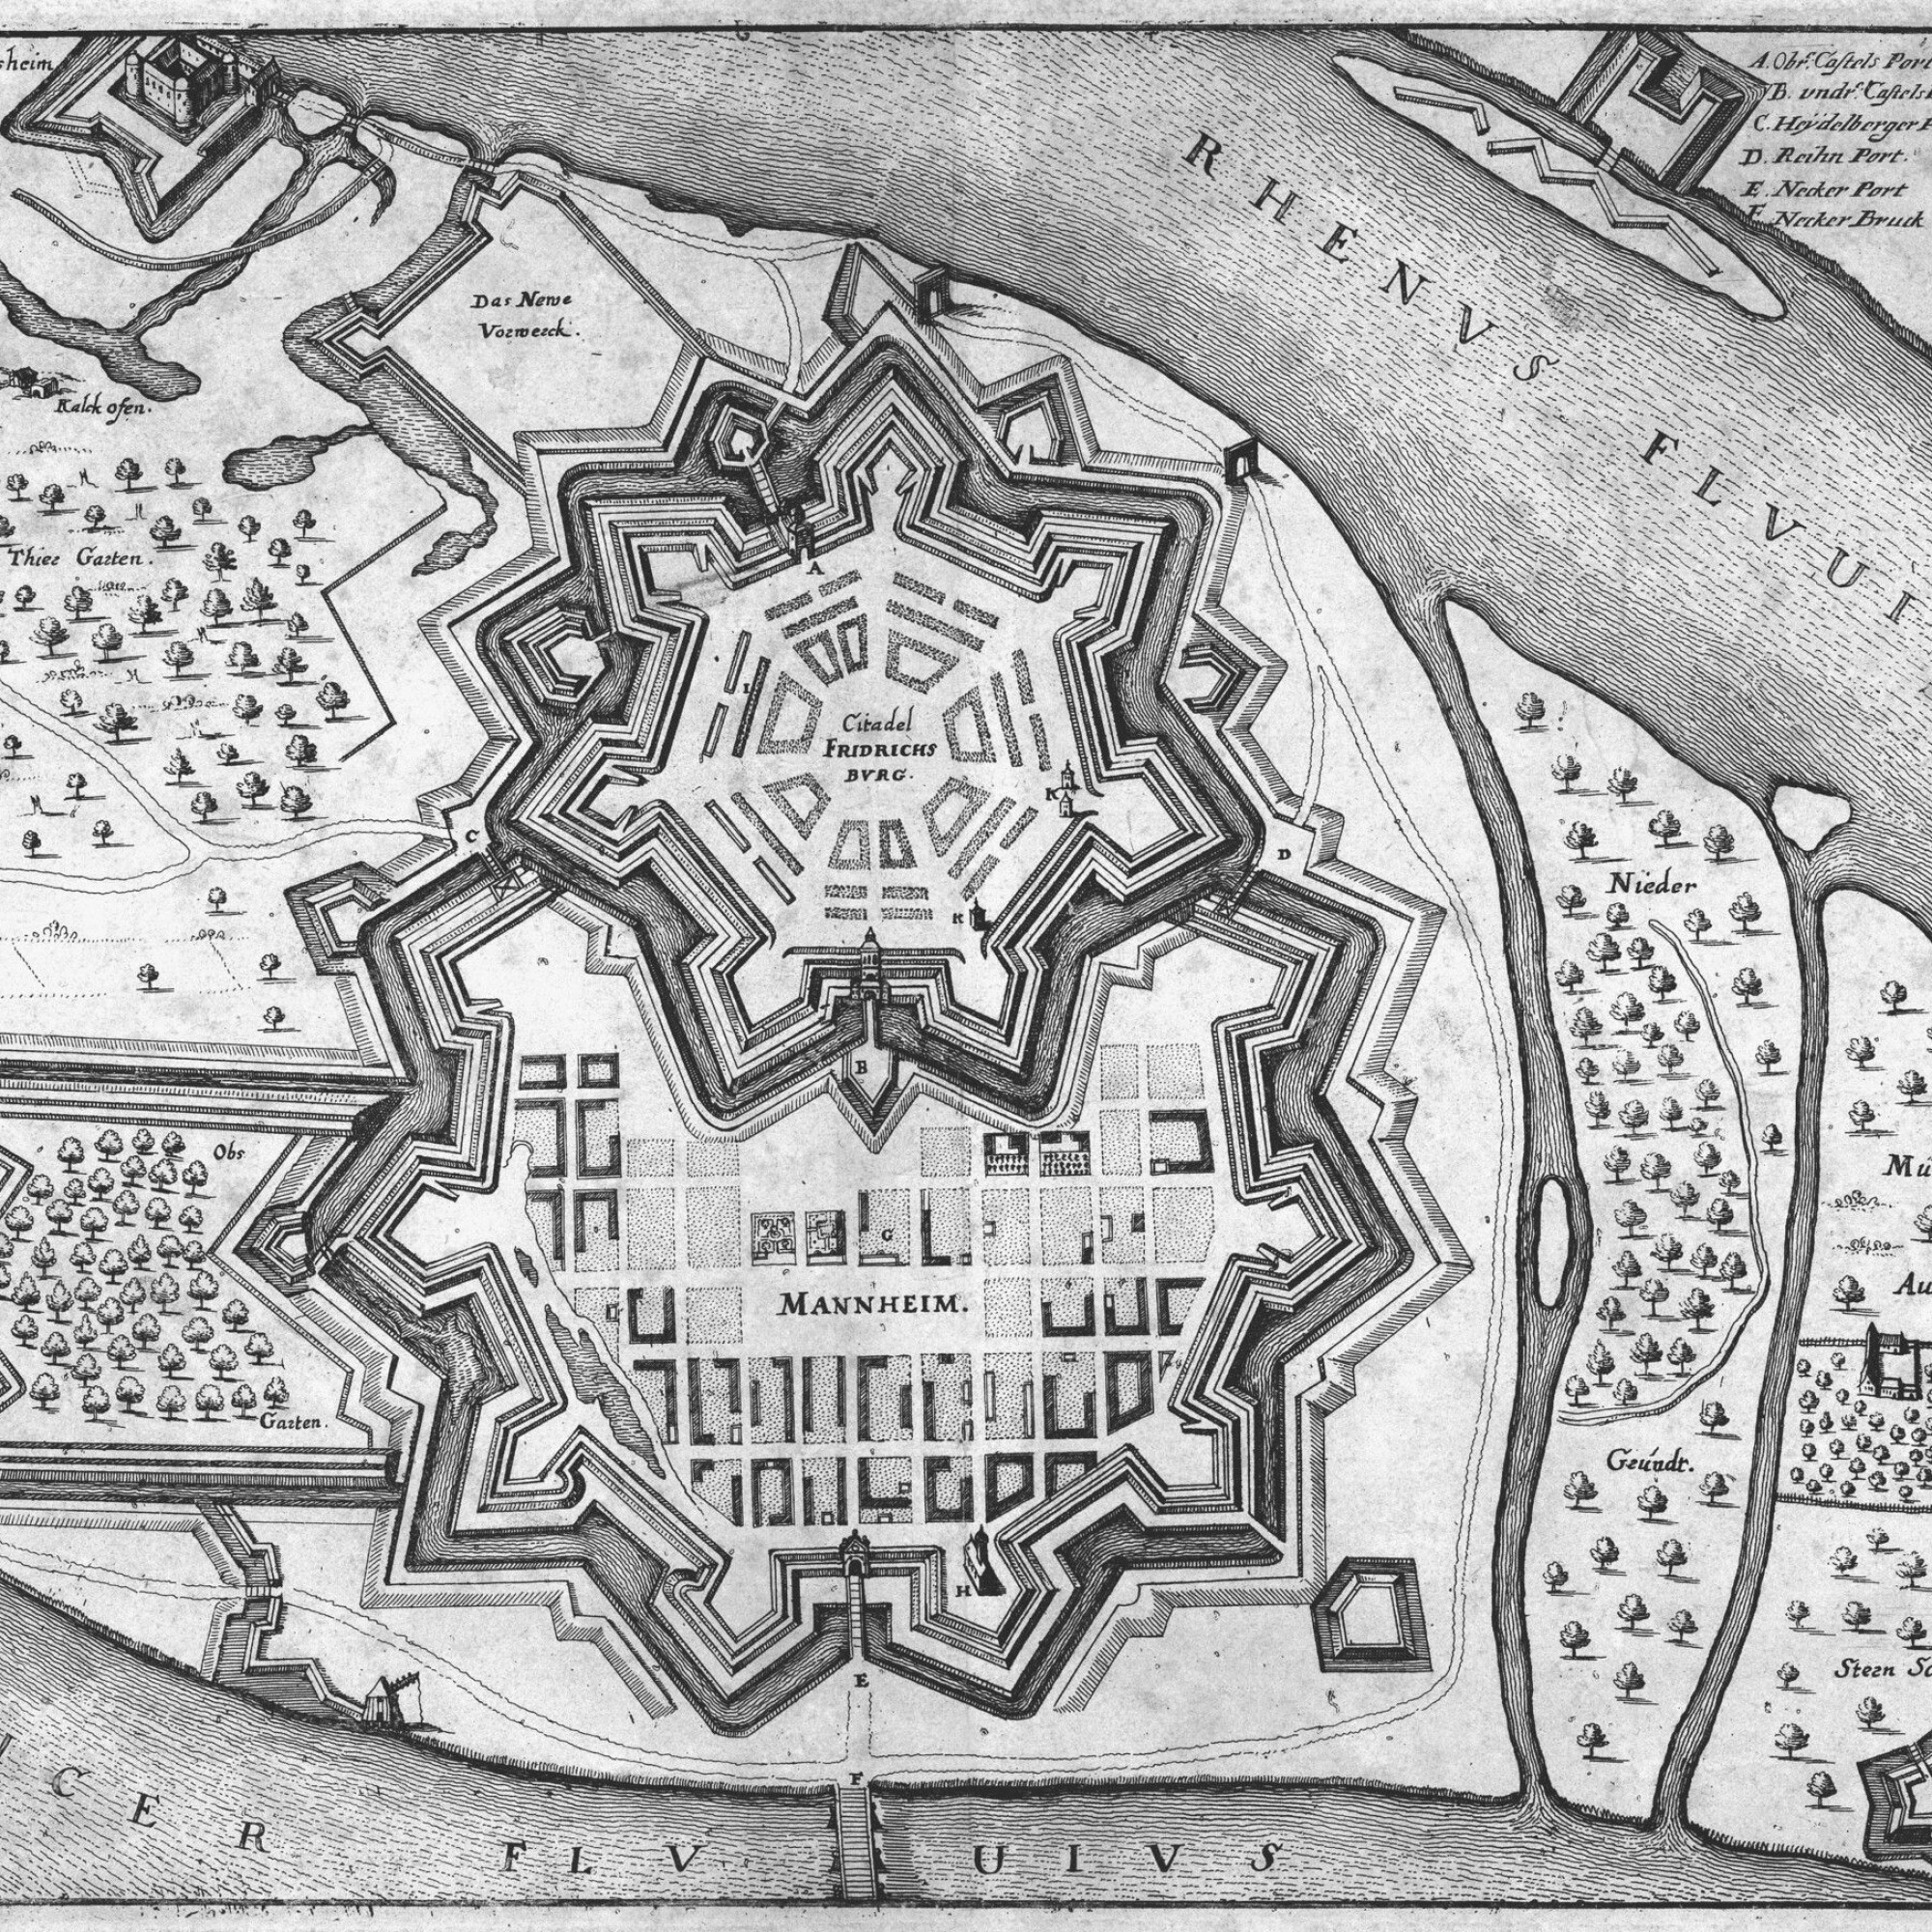 Stadtplan von Mainheim, 1645 nach Matthias Merian